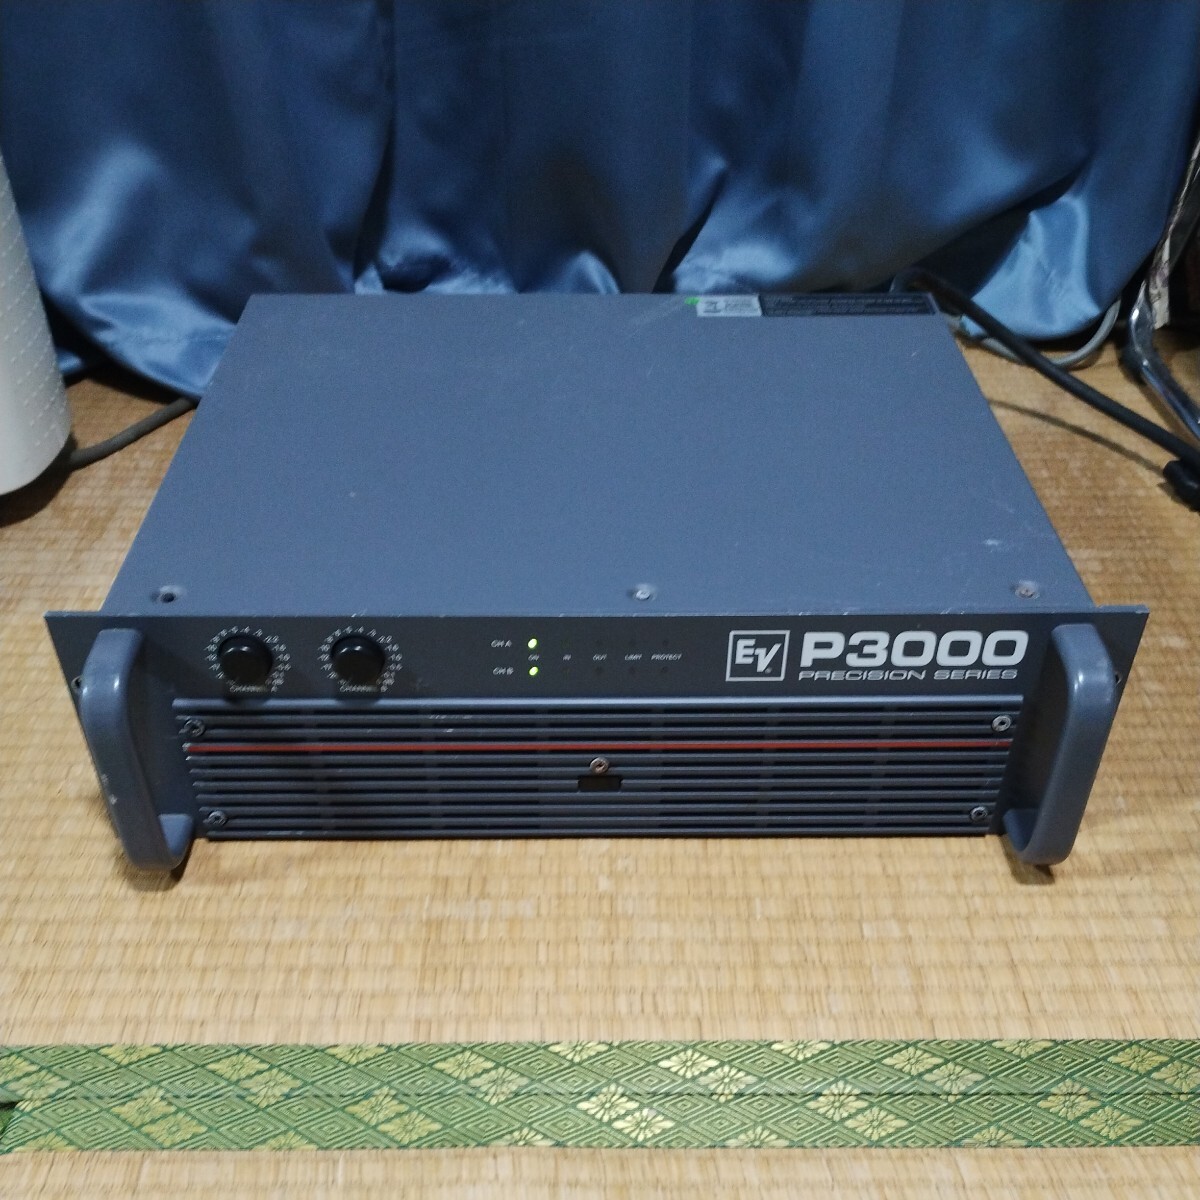 【即決!緊急大放出!】EV Electro Voice P3000 PRECISION SERIES パワーアンプの画像1